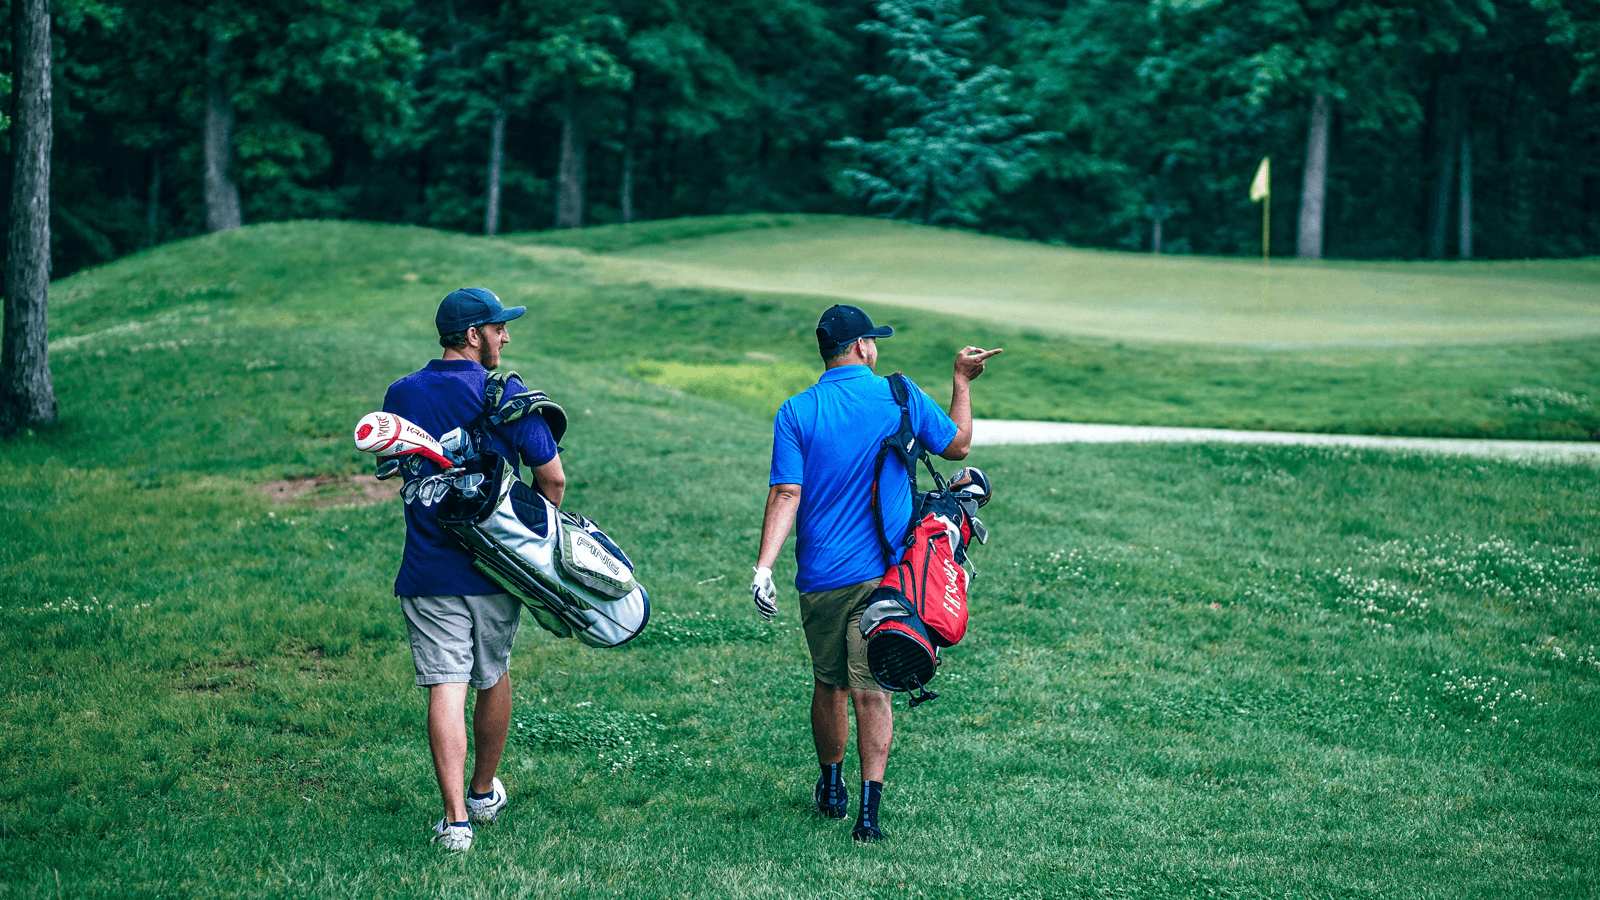 Đánh golf là một môn thể thao “quý tộc” vì không phải ai cũng có khả năng theo đuổi nó. Tuy môn này khá thong thả nhưng đòi hỏi người chơi phải có thể lực tốt và cũng mang lại nhiều lợi ích sức khỏe.